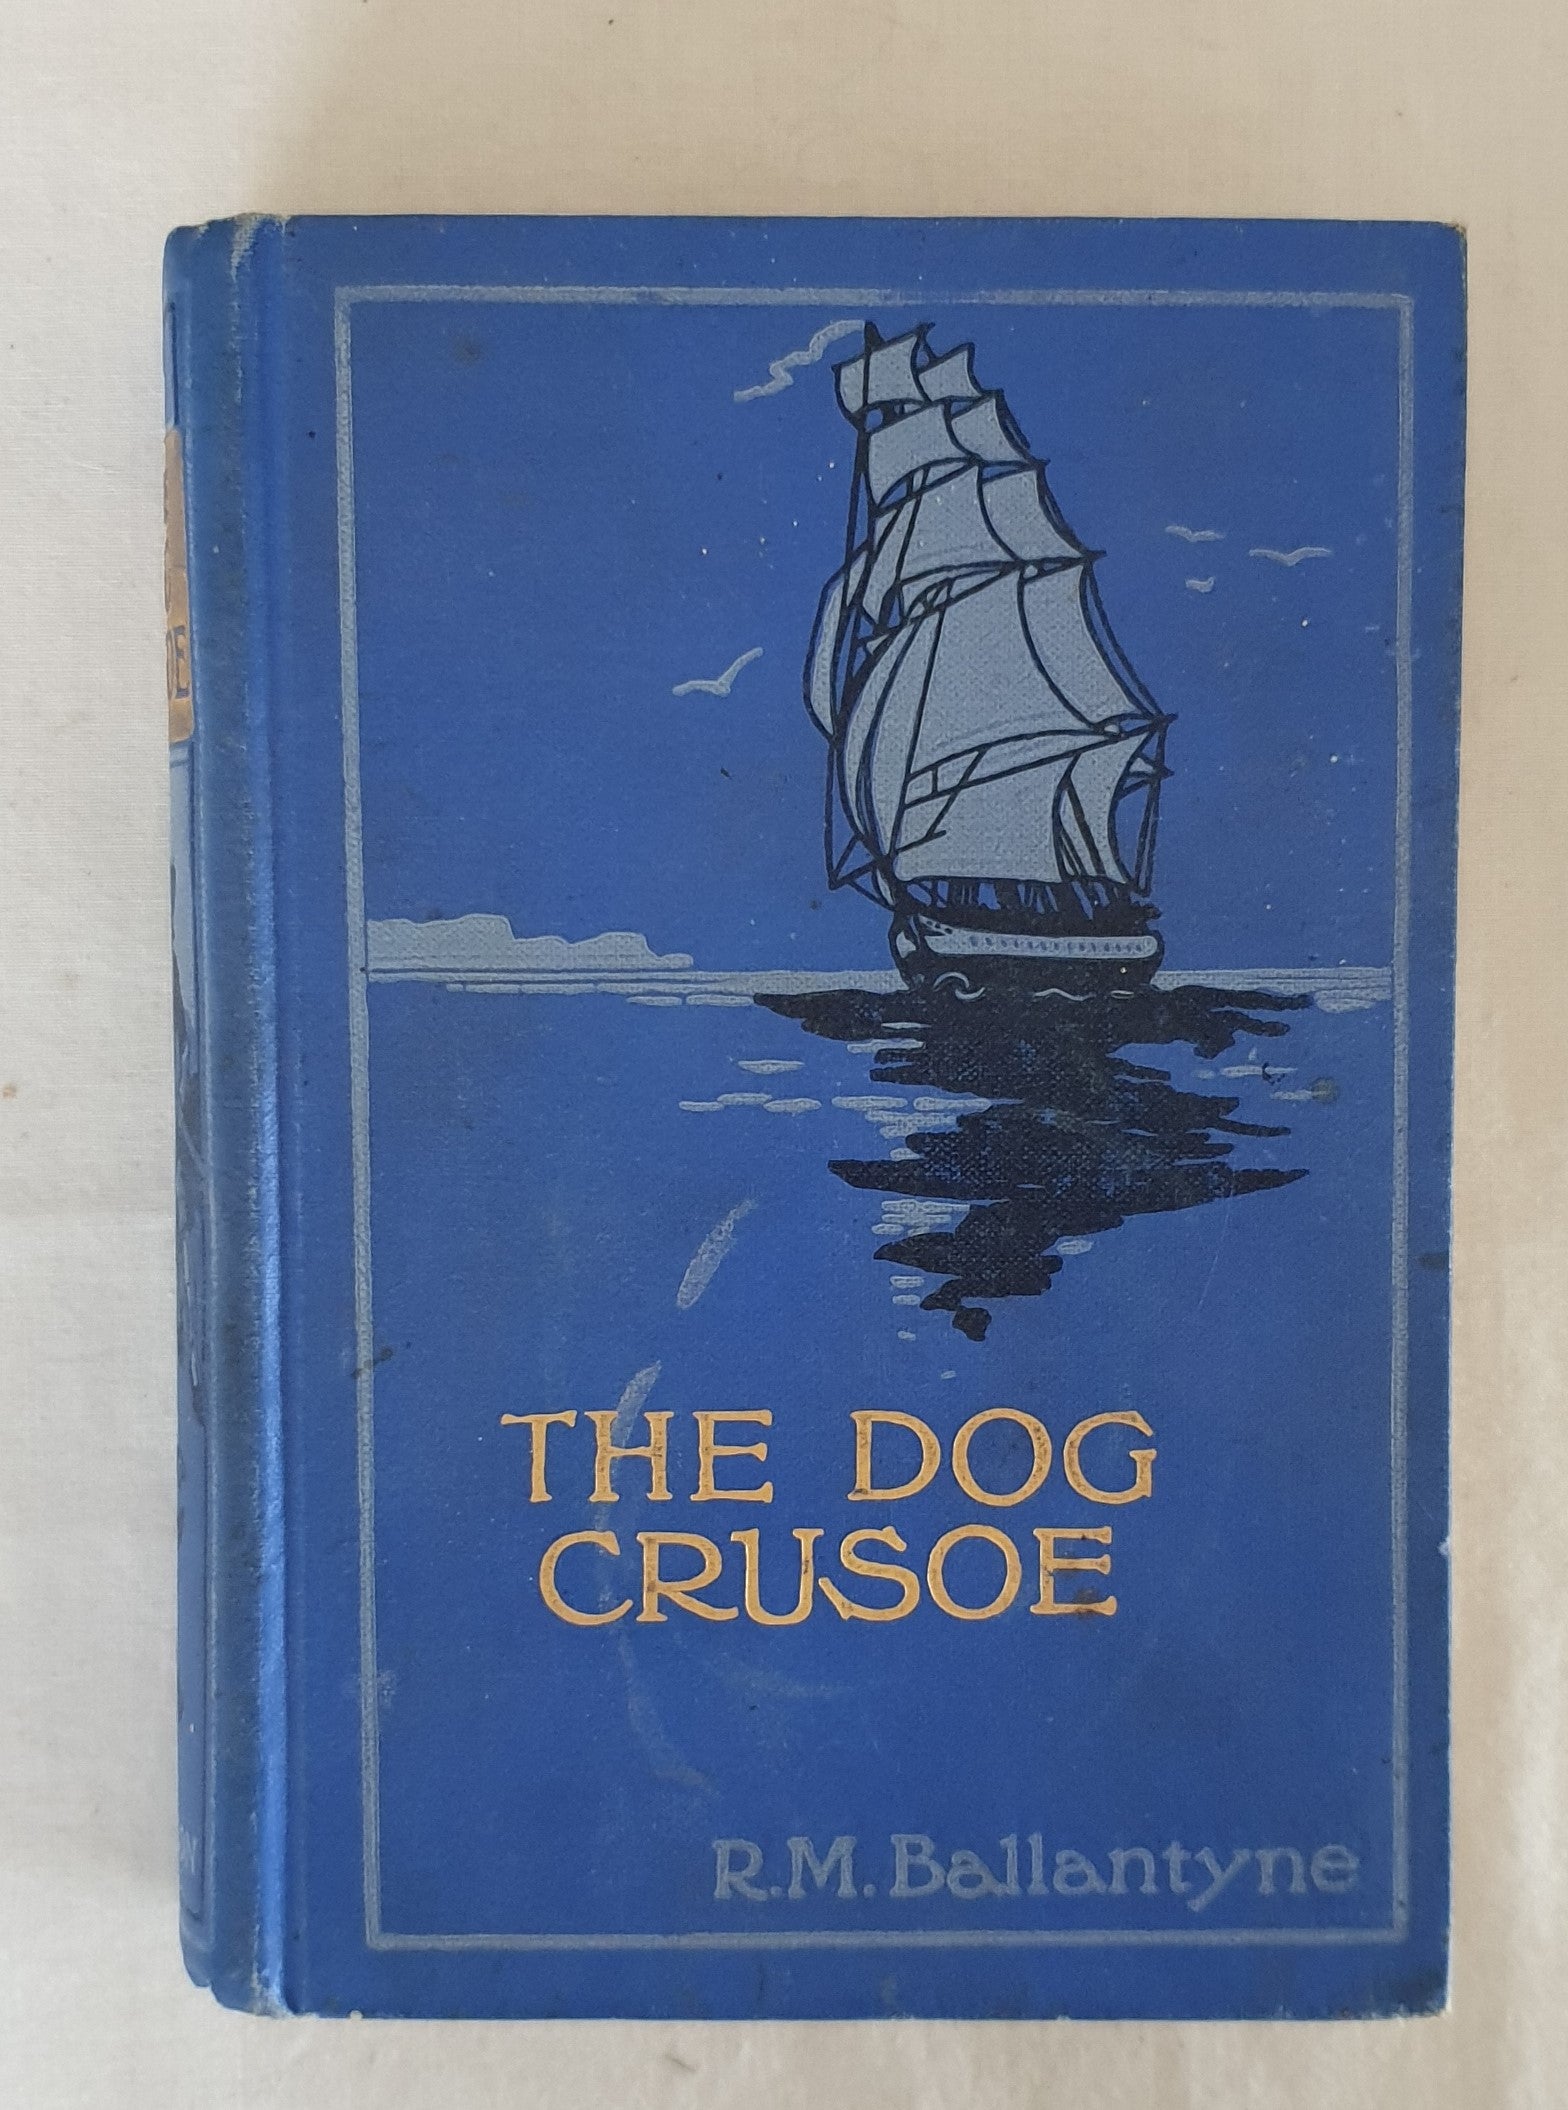 The Dog Crusoe by R. M. Ballantyne